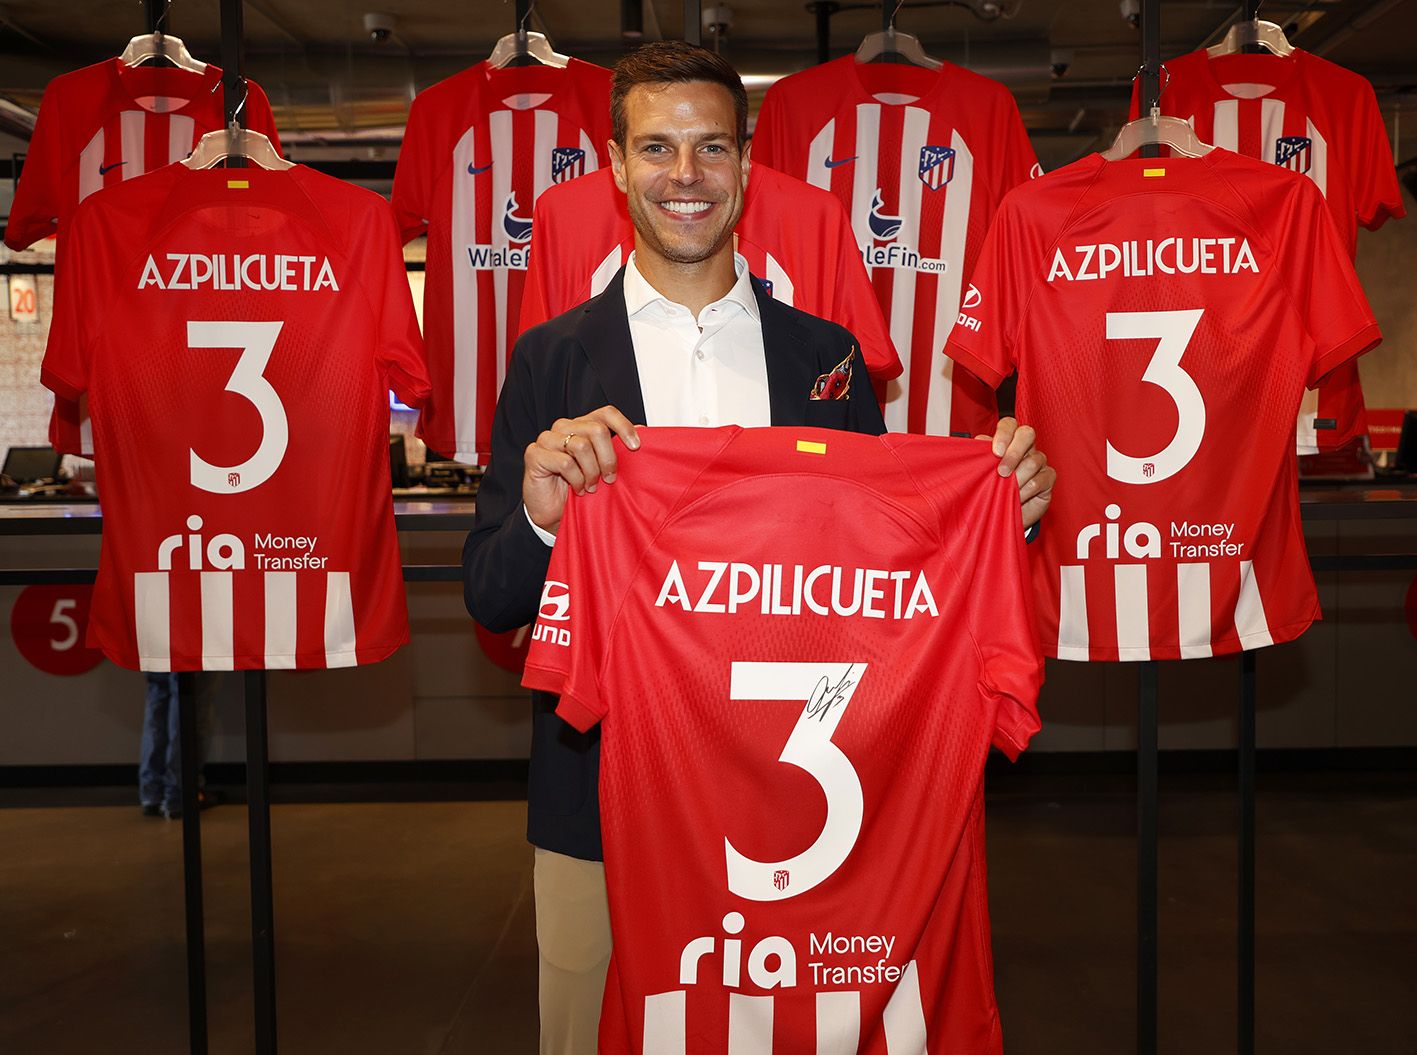 OFICIAL: Azpilicueta nuevo jugador del Atlético de Madrid